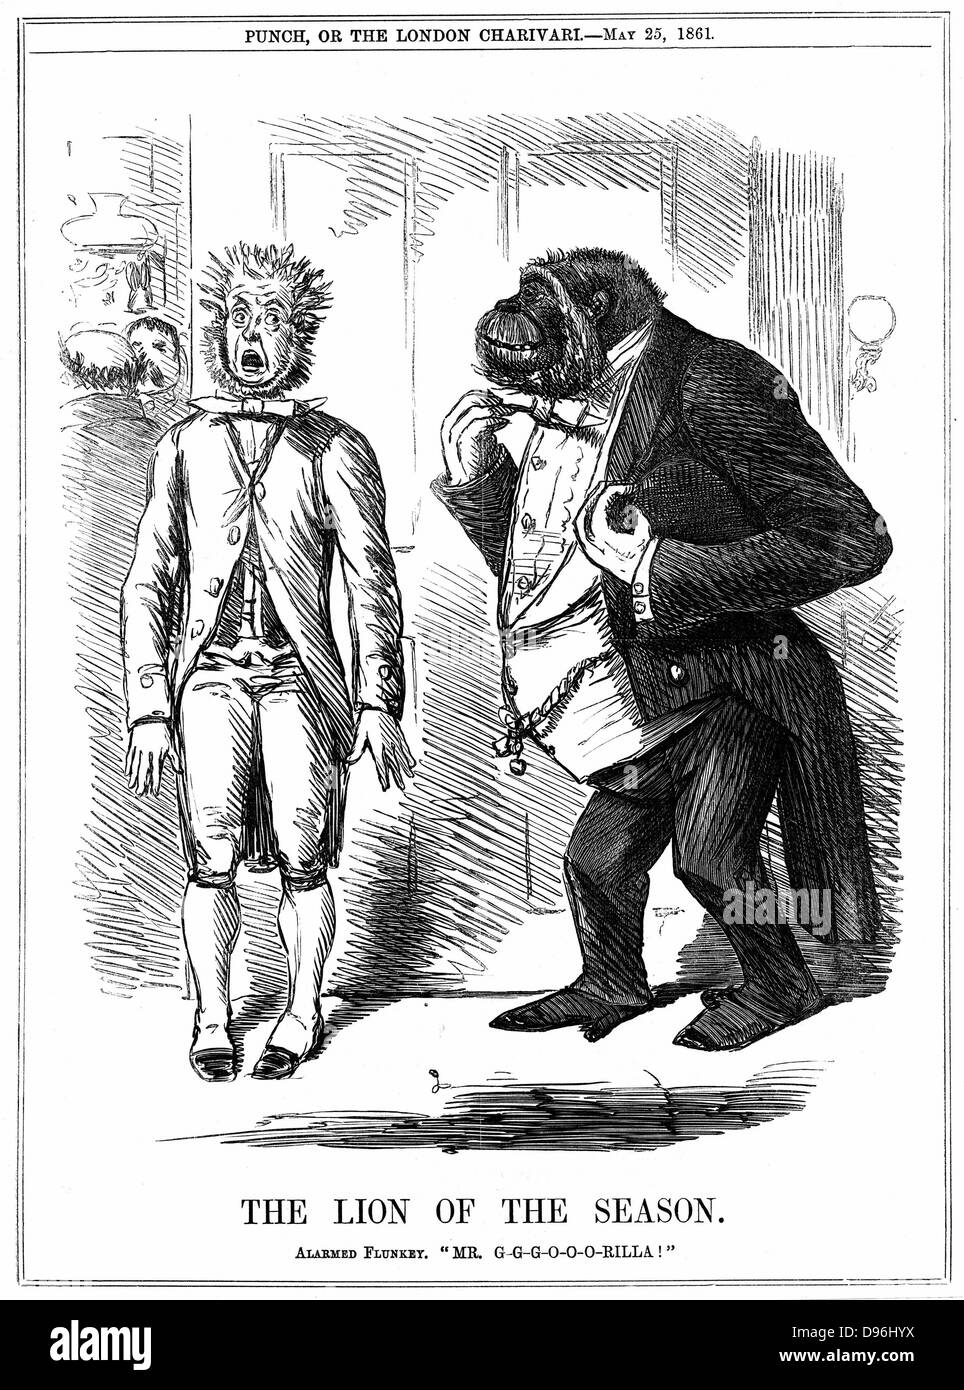 Le lion de la saison" : John Leach caricature de 'Punch' London 25 mai 1861, alors que la controverse sur Darwin's 'Origine des espèces' faisait rage. Gravure Banque D'Images